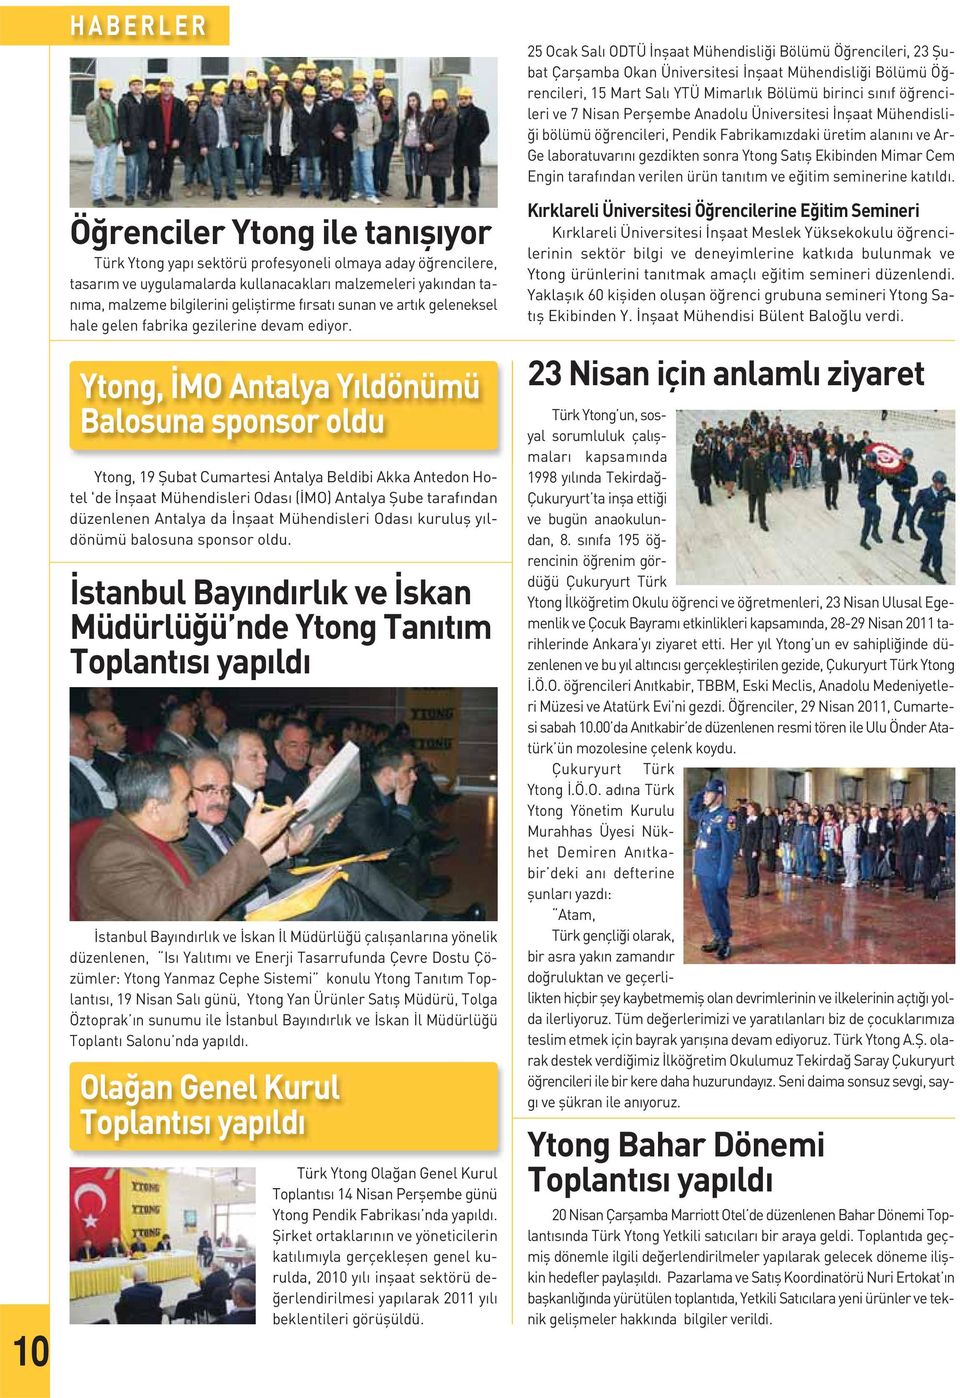 Ytong, İMO Antalya Yıldönümü Balosuna sponsor oldu Ytong, 19 Şubat Cumartesi Antalya Beldibi Akka Antedon Hotel 'de İnşaat Mühendisleri Odası (İMO) Antalya Şube tarafından düzenlenen Antalya da